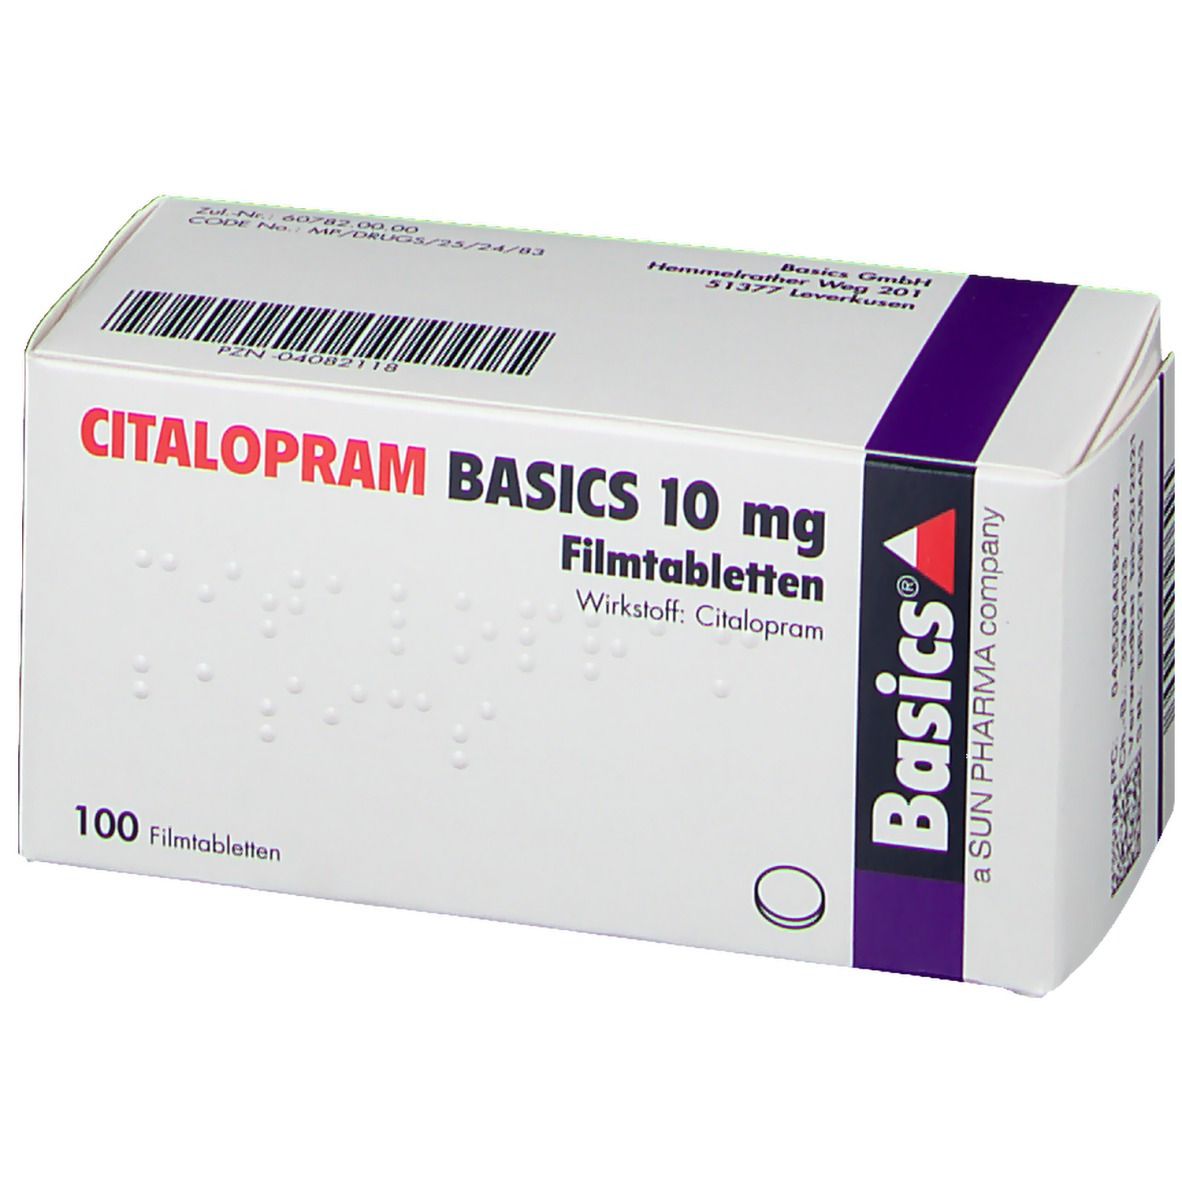 CITALOPRAM BASICS 10 mg